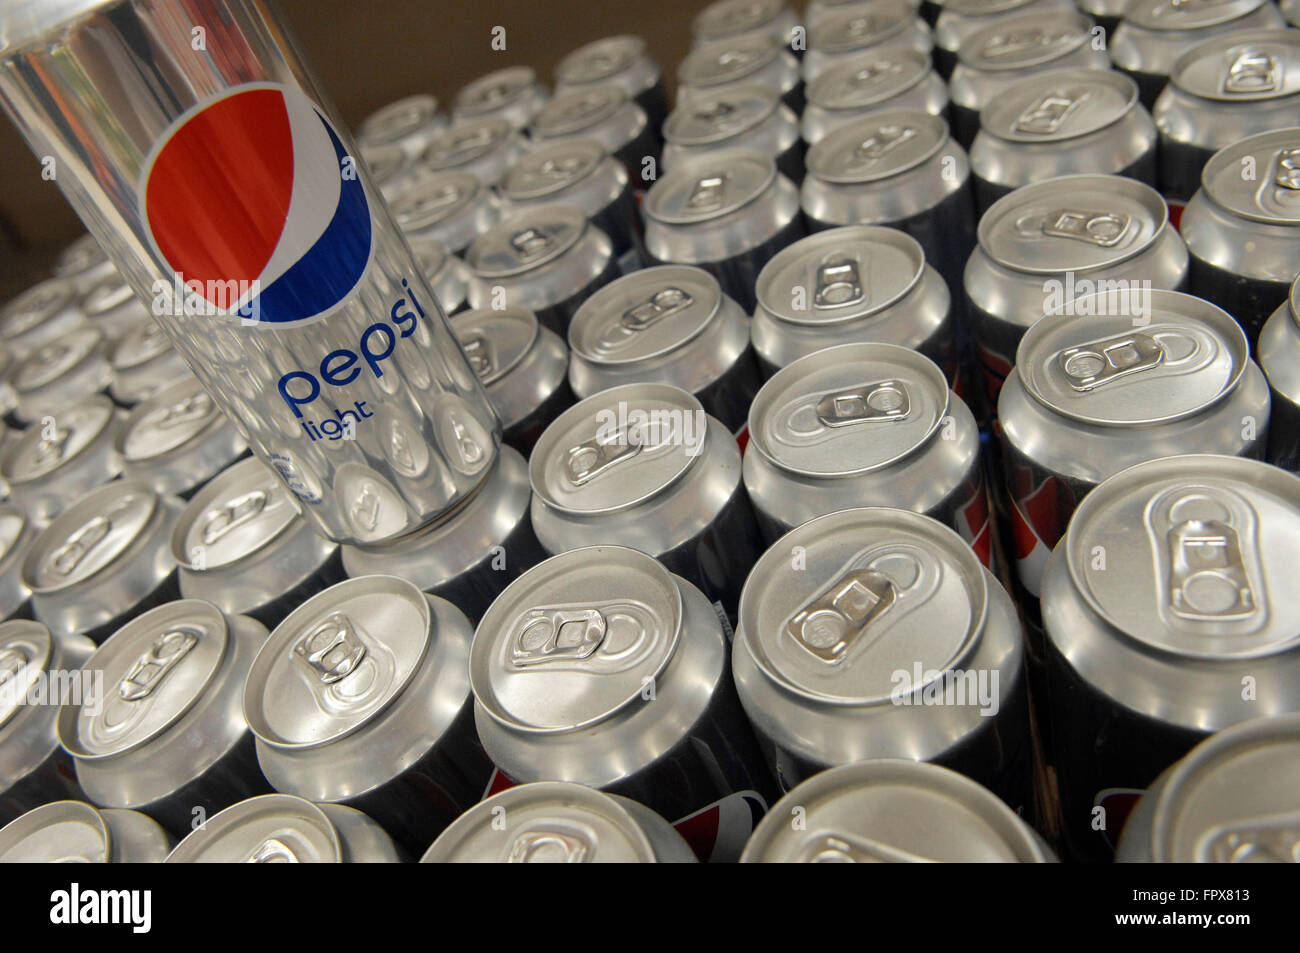 Lumière Pepsi Cola au-dessus des autres boîtes affichées dans un supermarché Carrefour, Banque D'Images